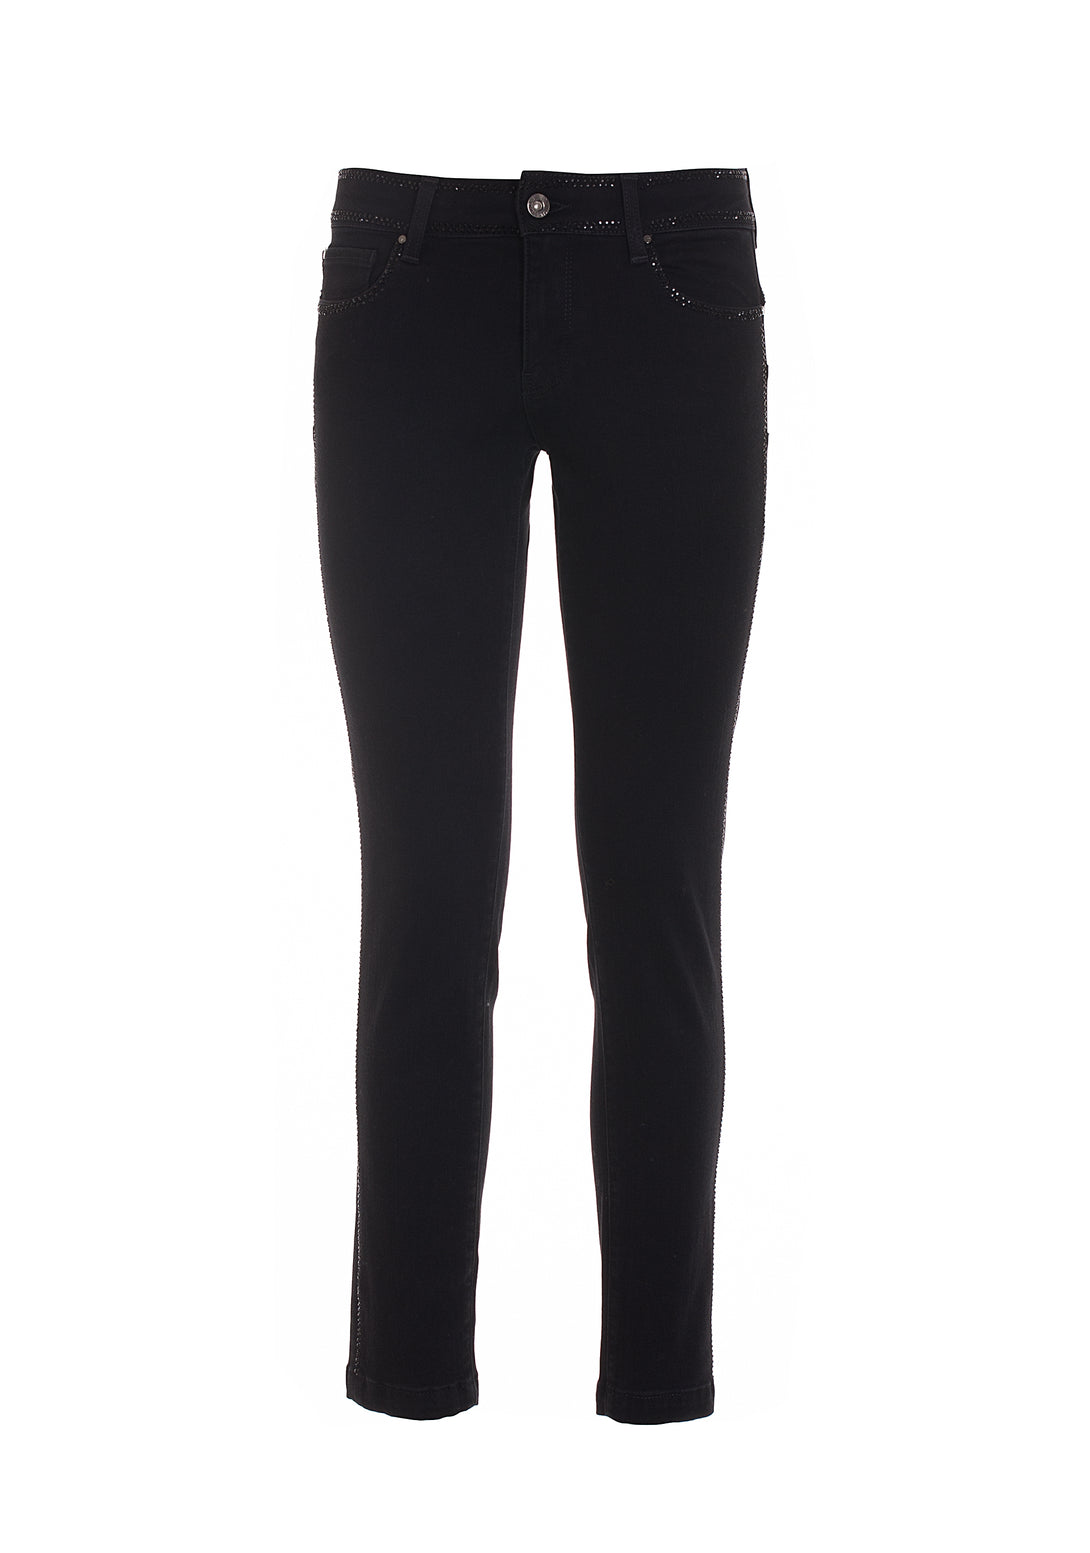 Jeans skinny in denim nero con lavaggio scuro-FRACOMINA-FR22WV1001D45101-053-JN-24